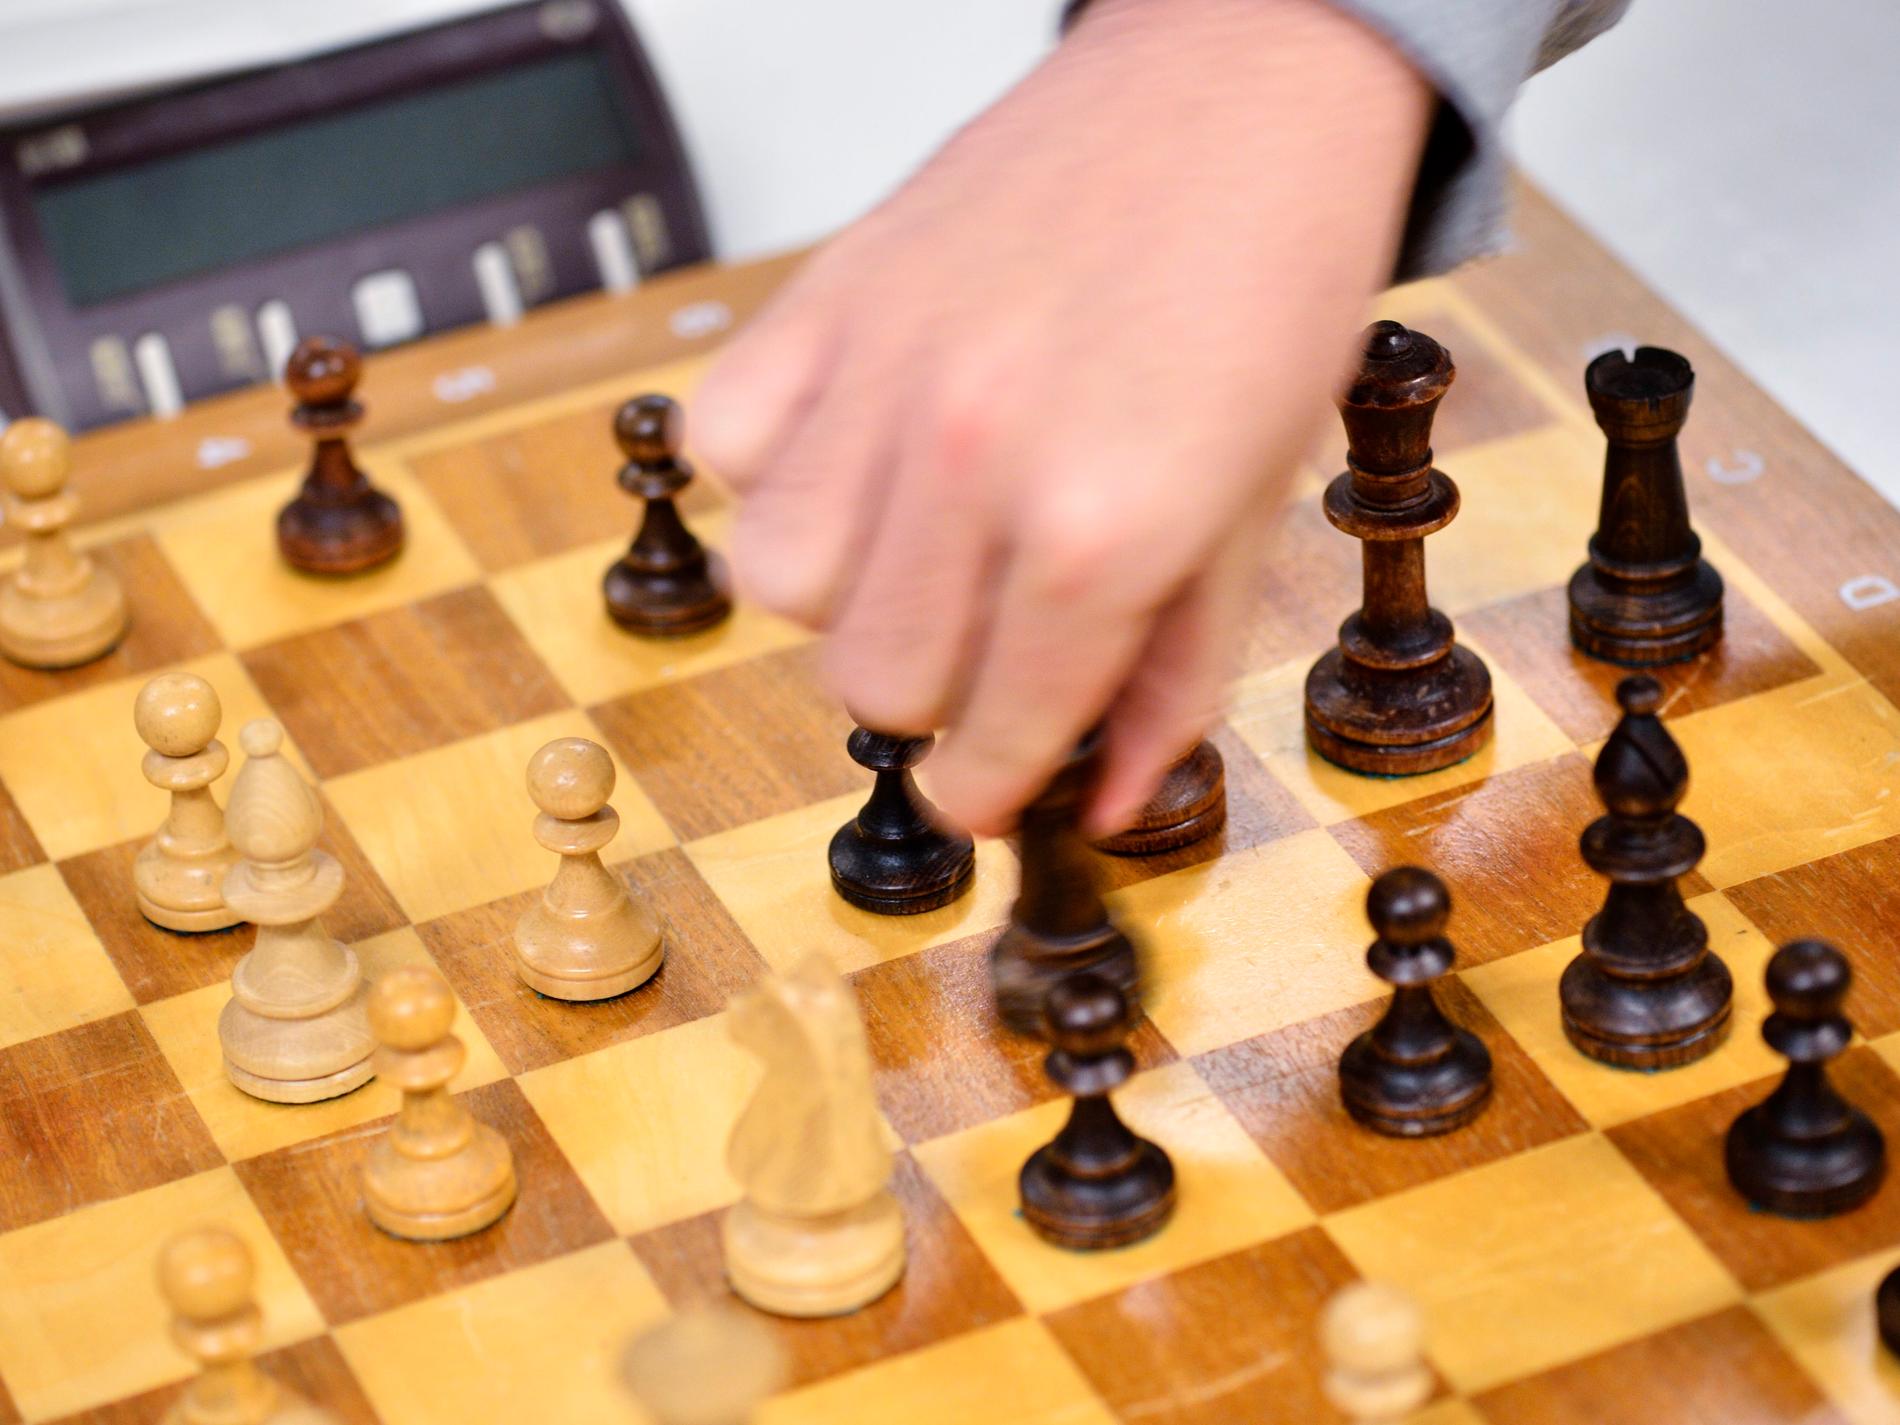 Bra drag kring svenska schackbräden